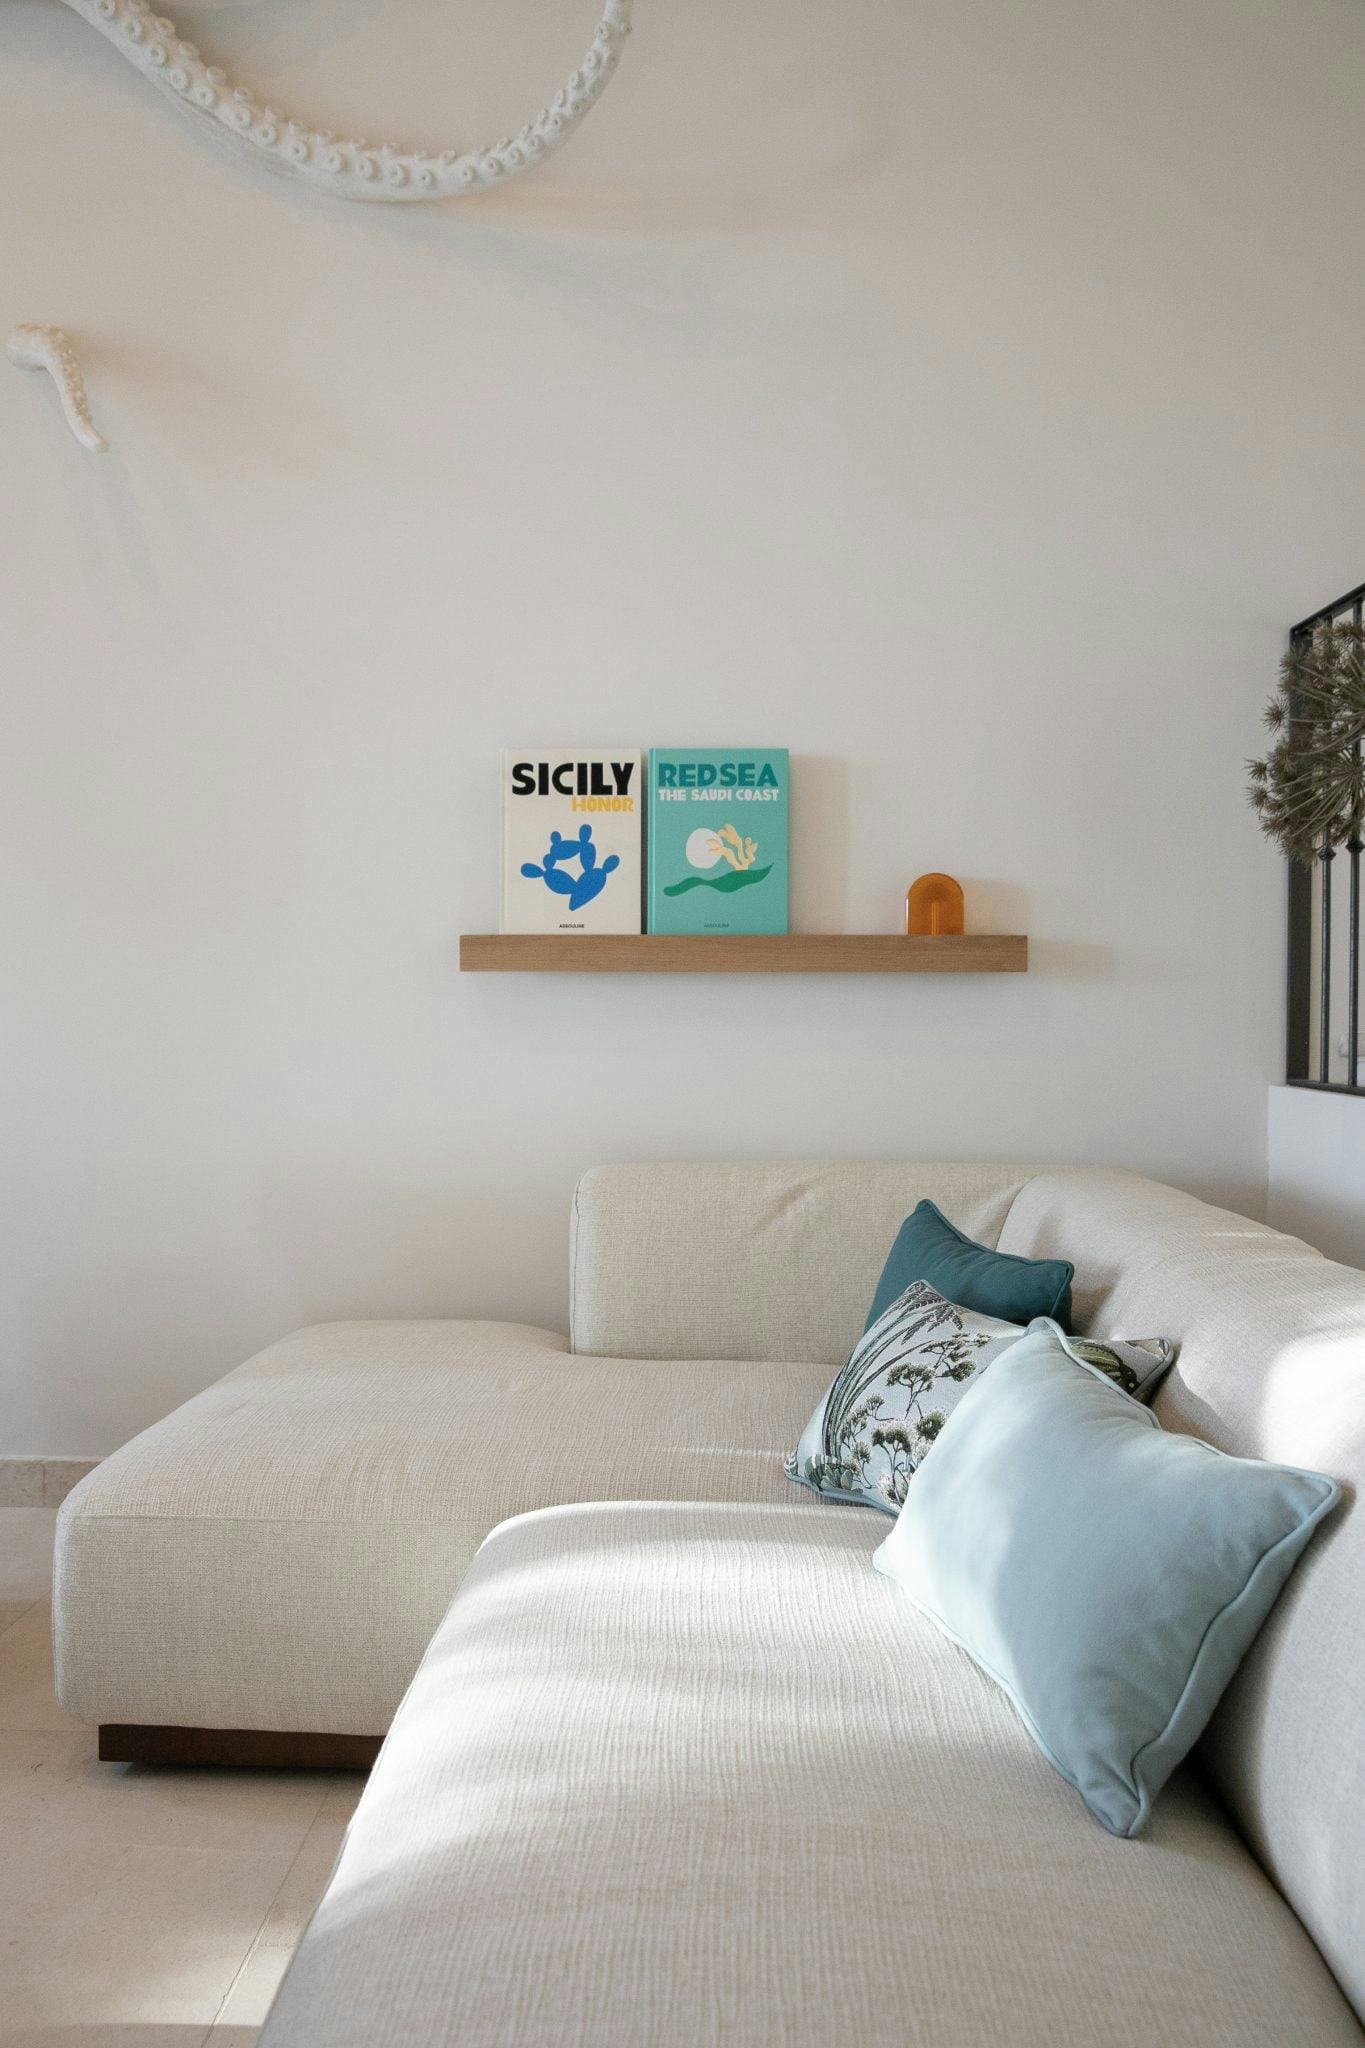 Salon : canapé blanc moderne et décoration (coussins et livres) dans les tons bleu